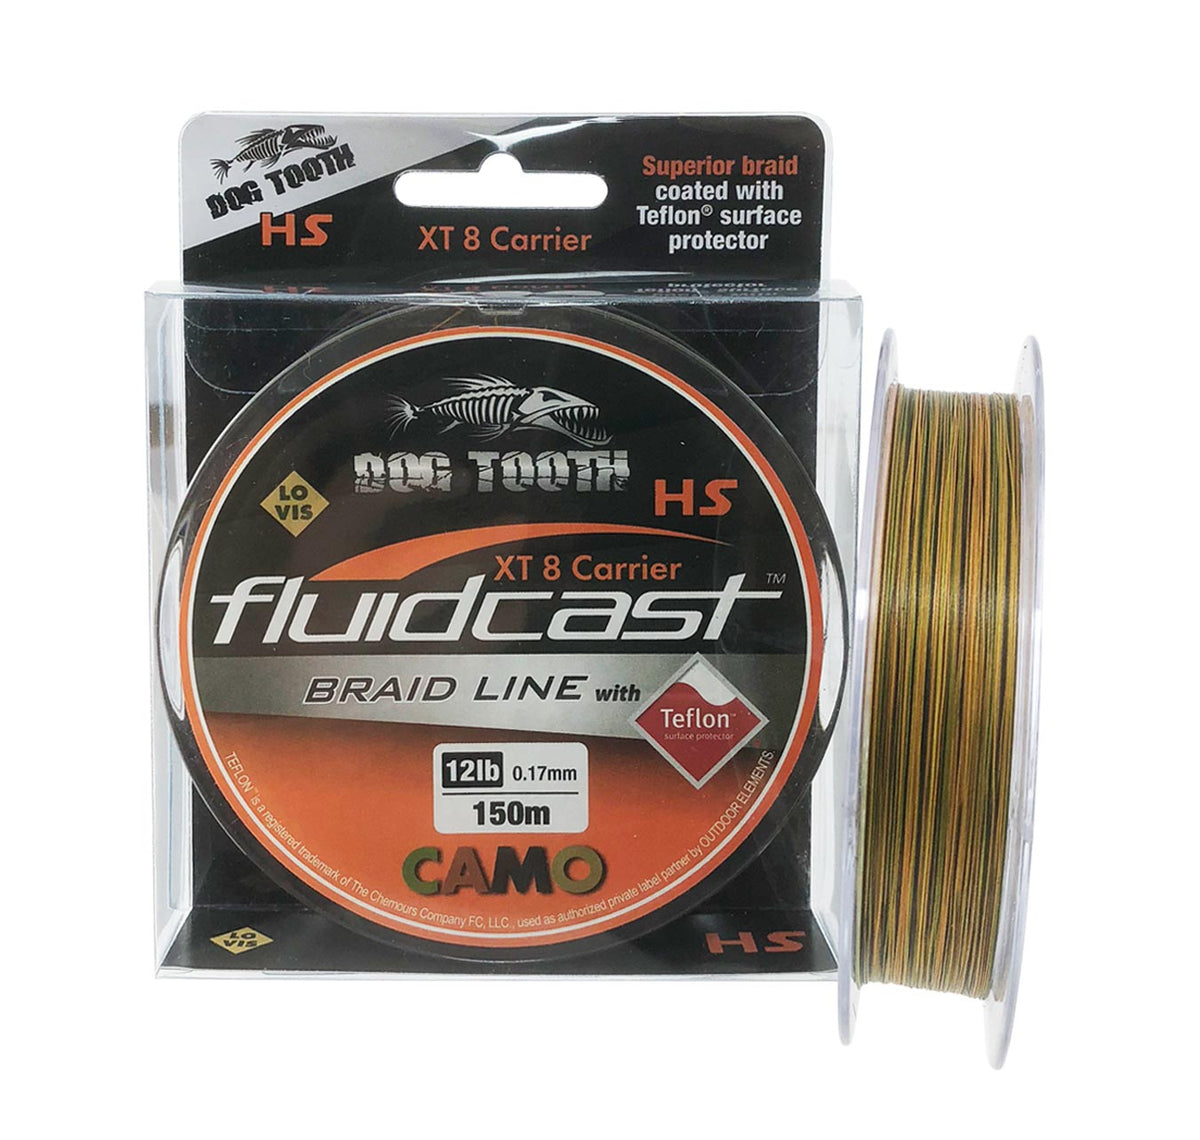 Dog Tooth Fluidcast X8 Camo Braid 150m